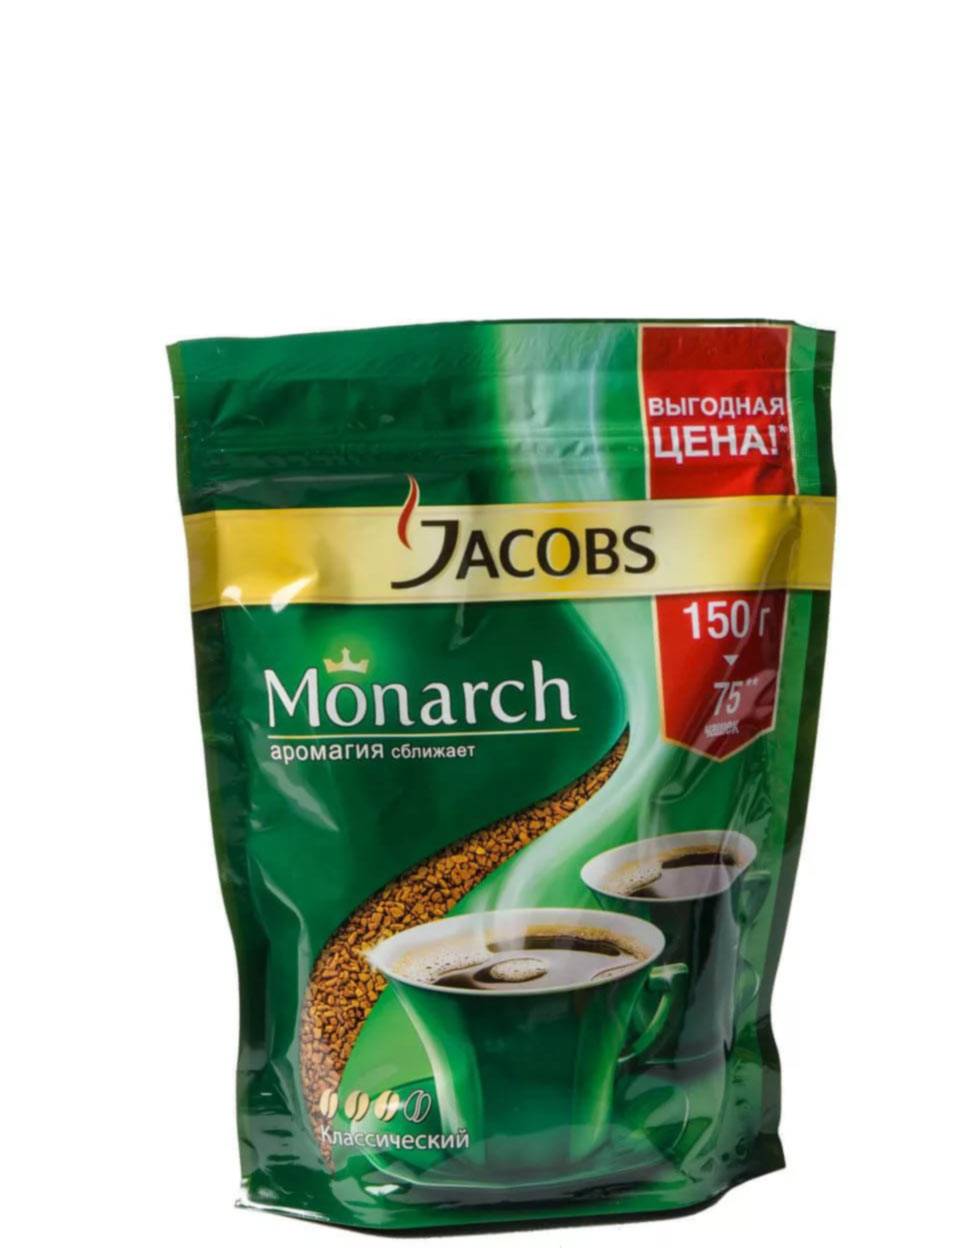 Сорта кофе якобс. кофе jacobs monarch: как отличить подделку от оригинала